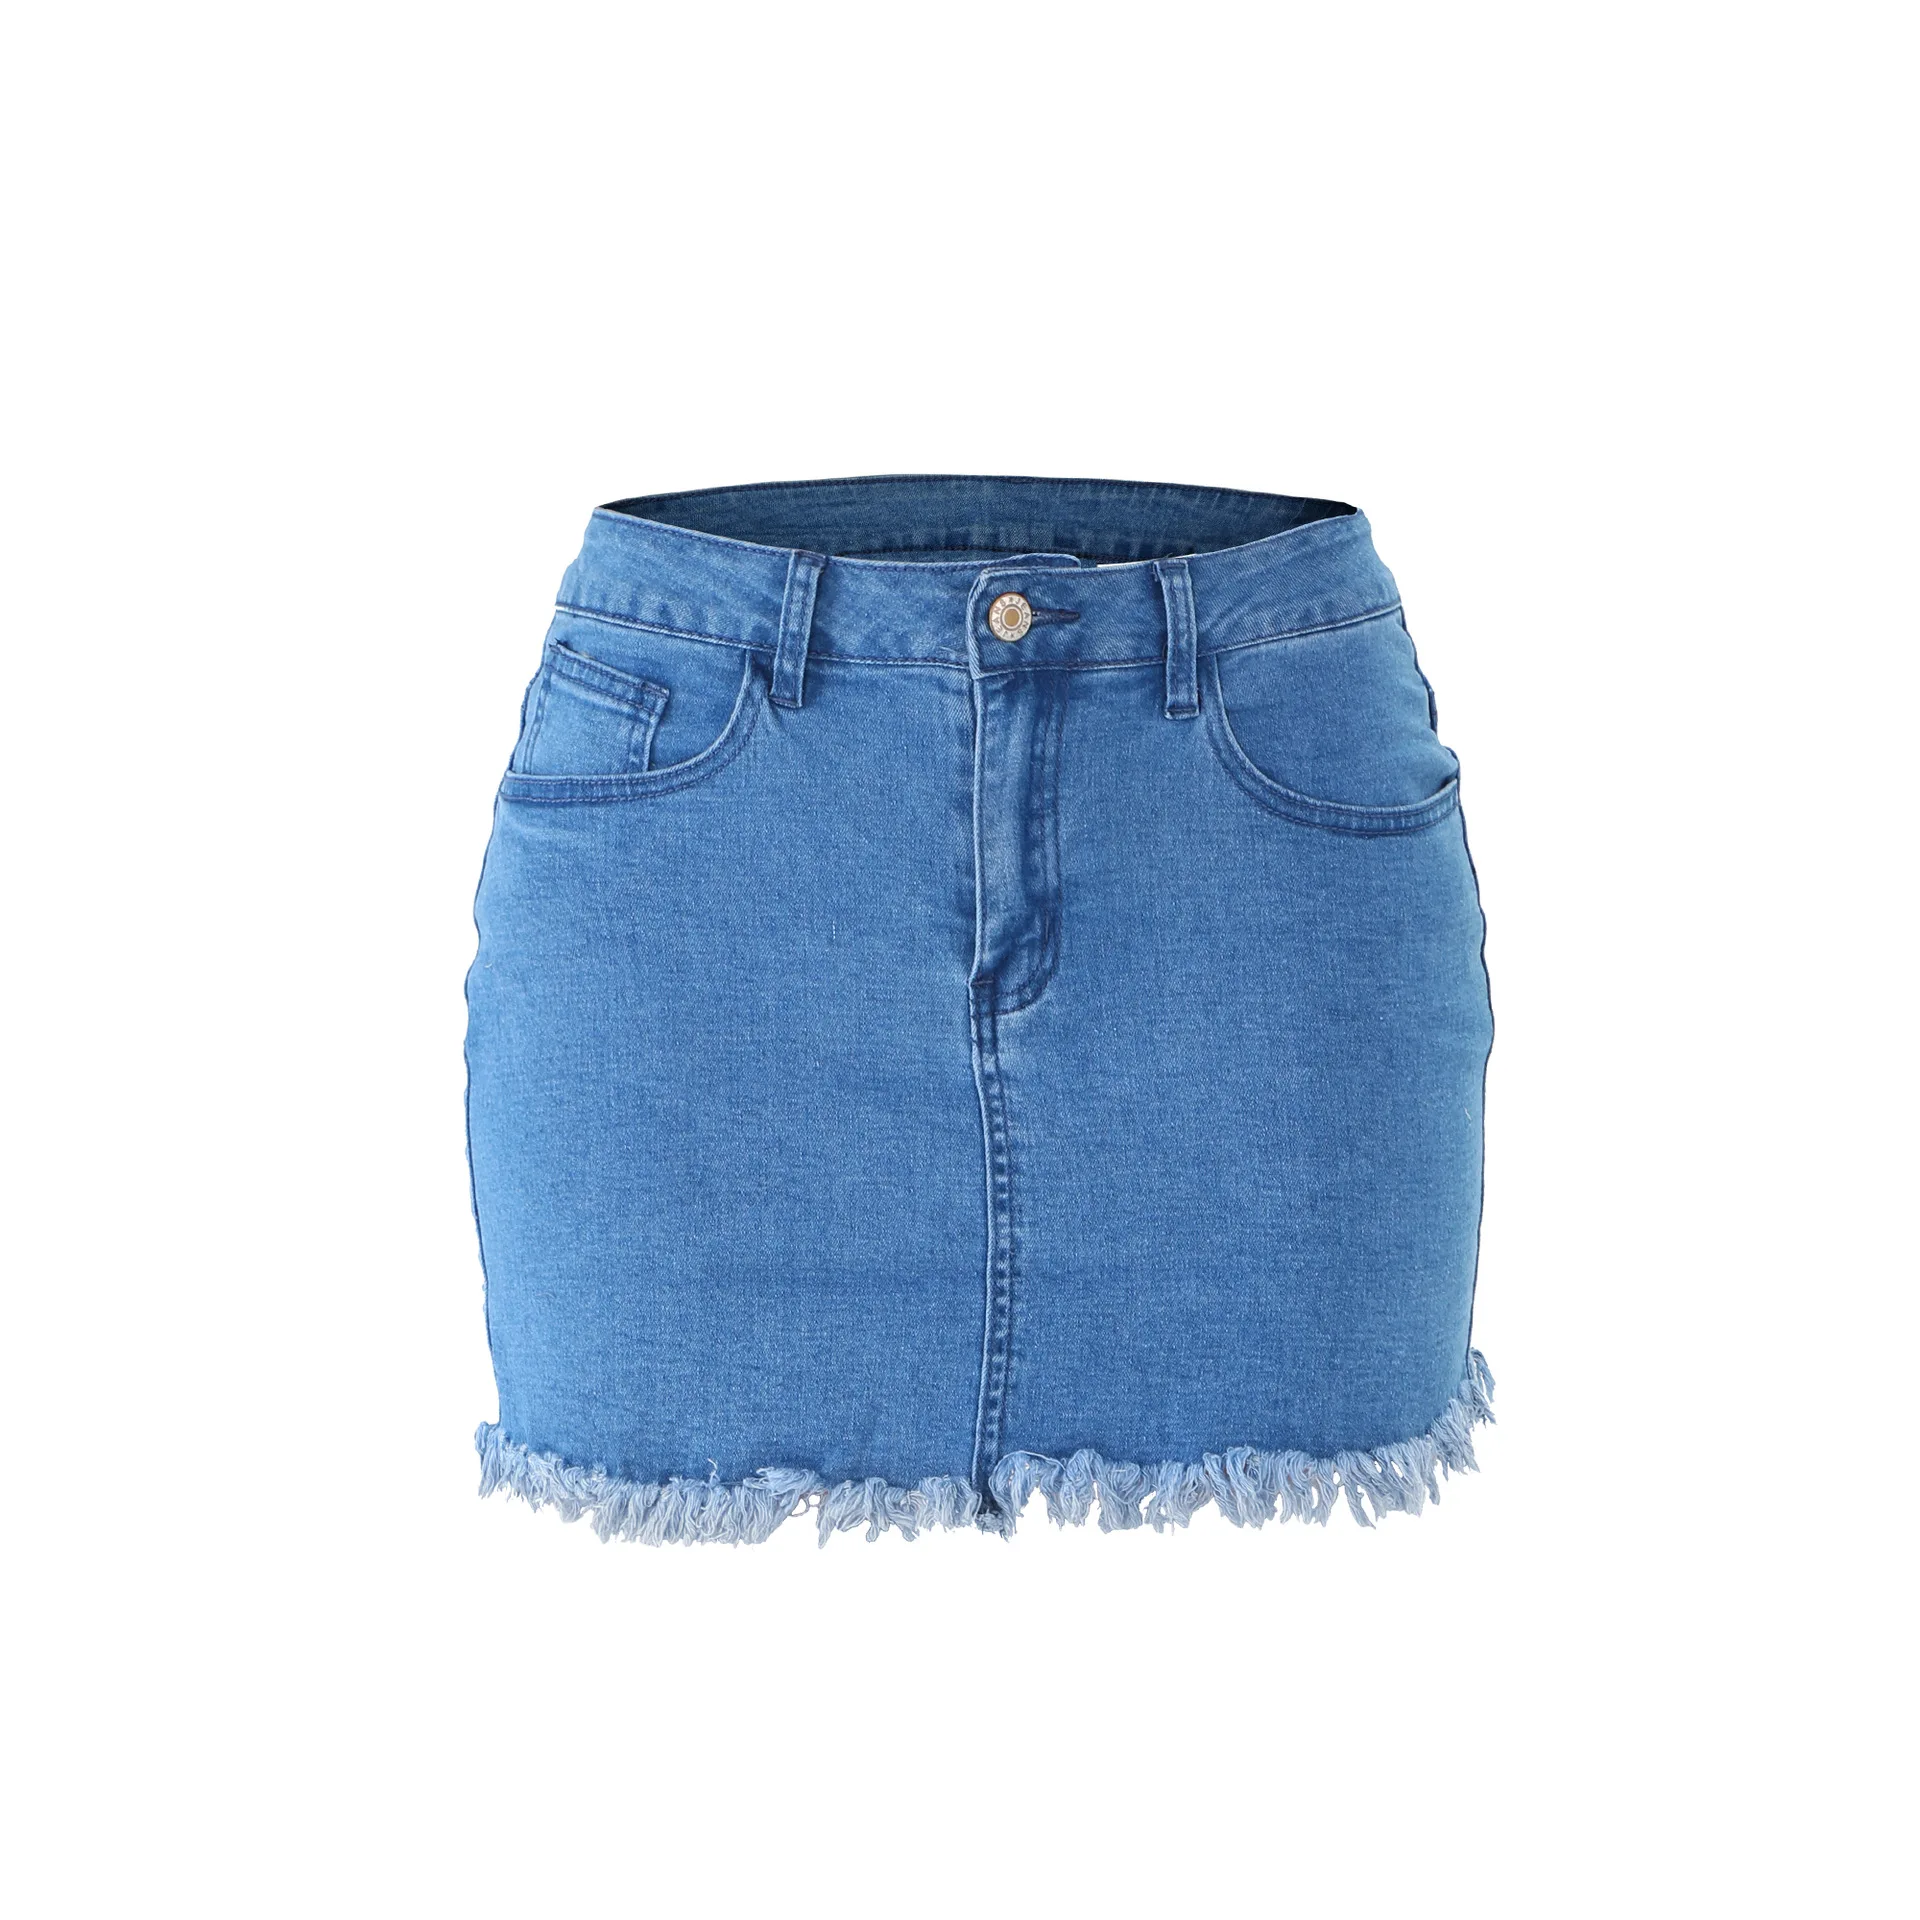 
Пакет Хип Джинсовая юбка 2019 новое летнее платье высокого качества с узкой талией мини сексуальные джинсы джинсовые шорты 